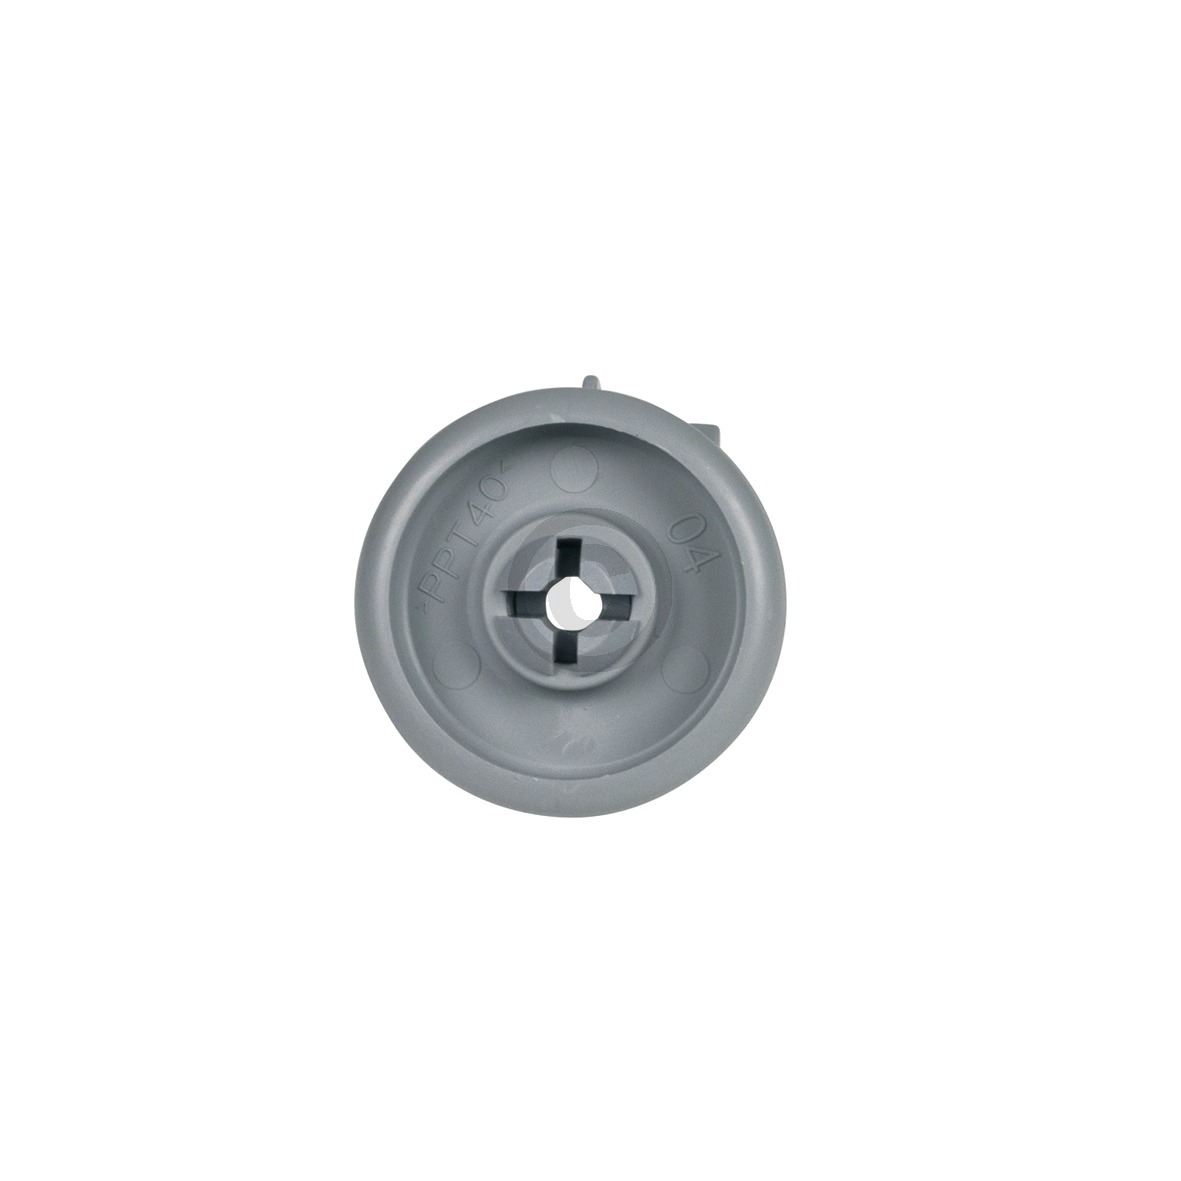 Korbrolle Whirlpool 481252888112 für Unterkorb Geschirrspüler 8Stk